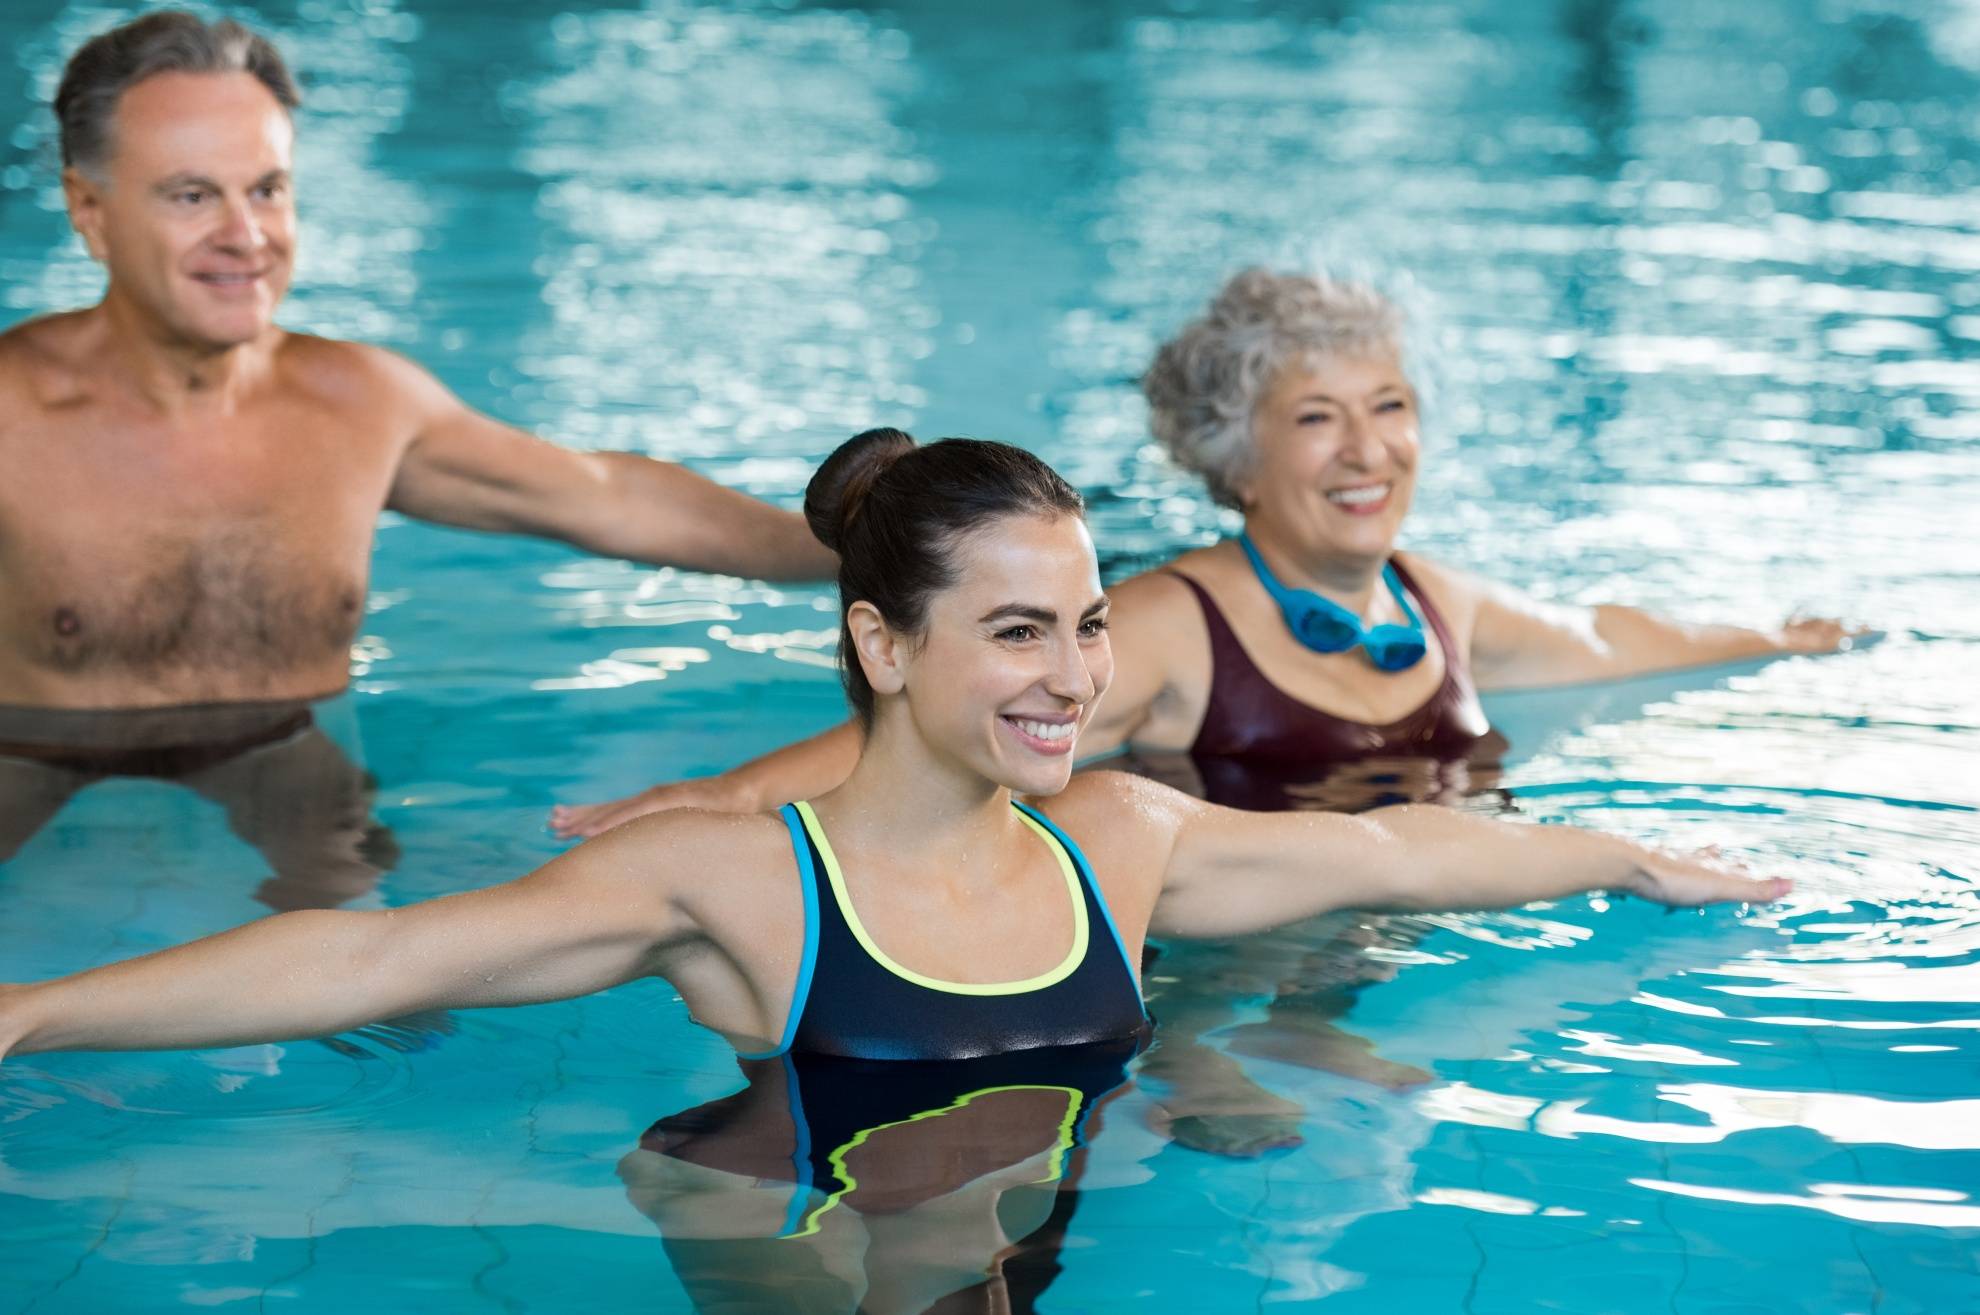 Как правильно плавать в бассейне, чтобы похудеть - виды и программы тренировок для мужчин и женщин